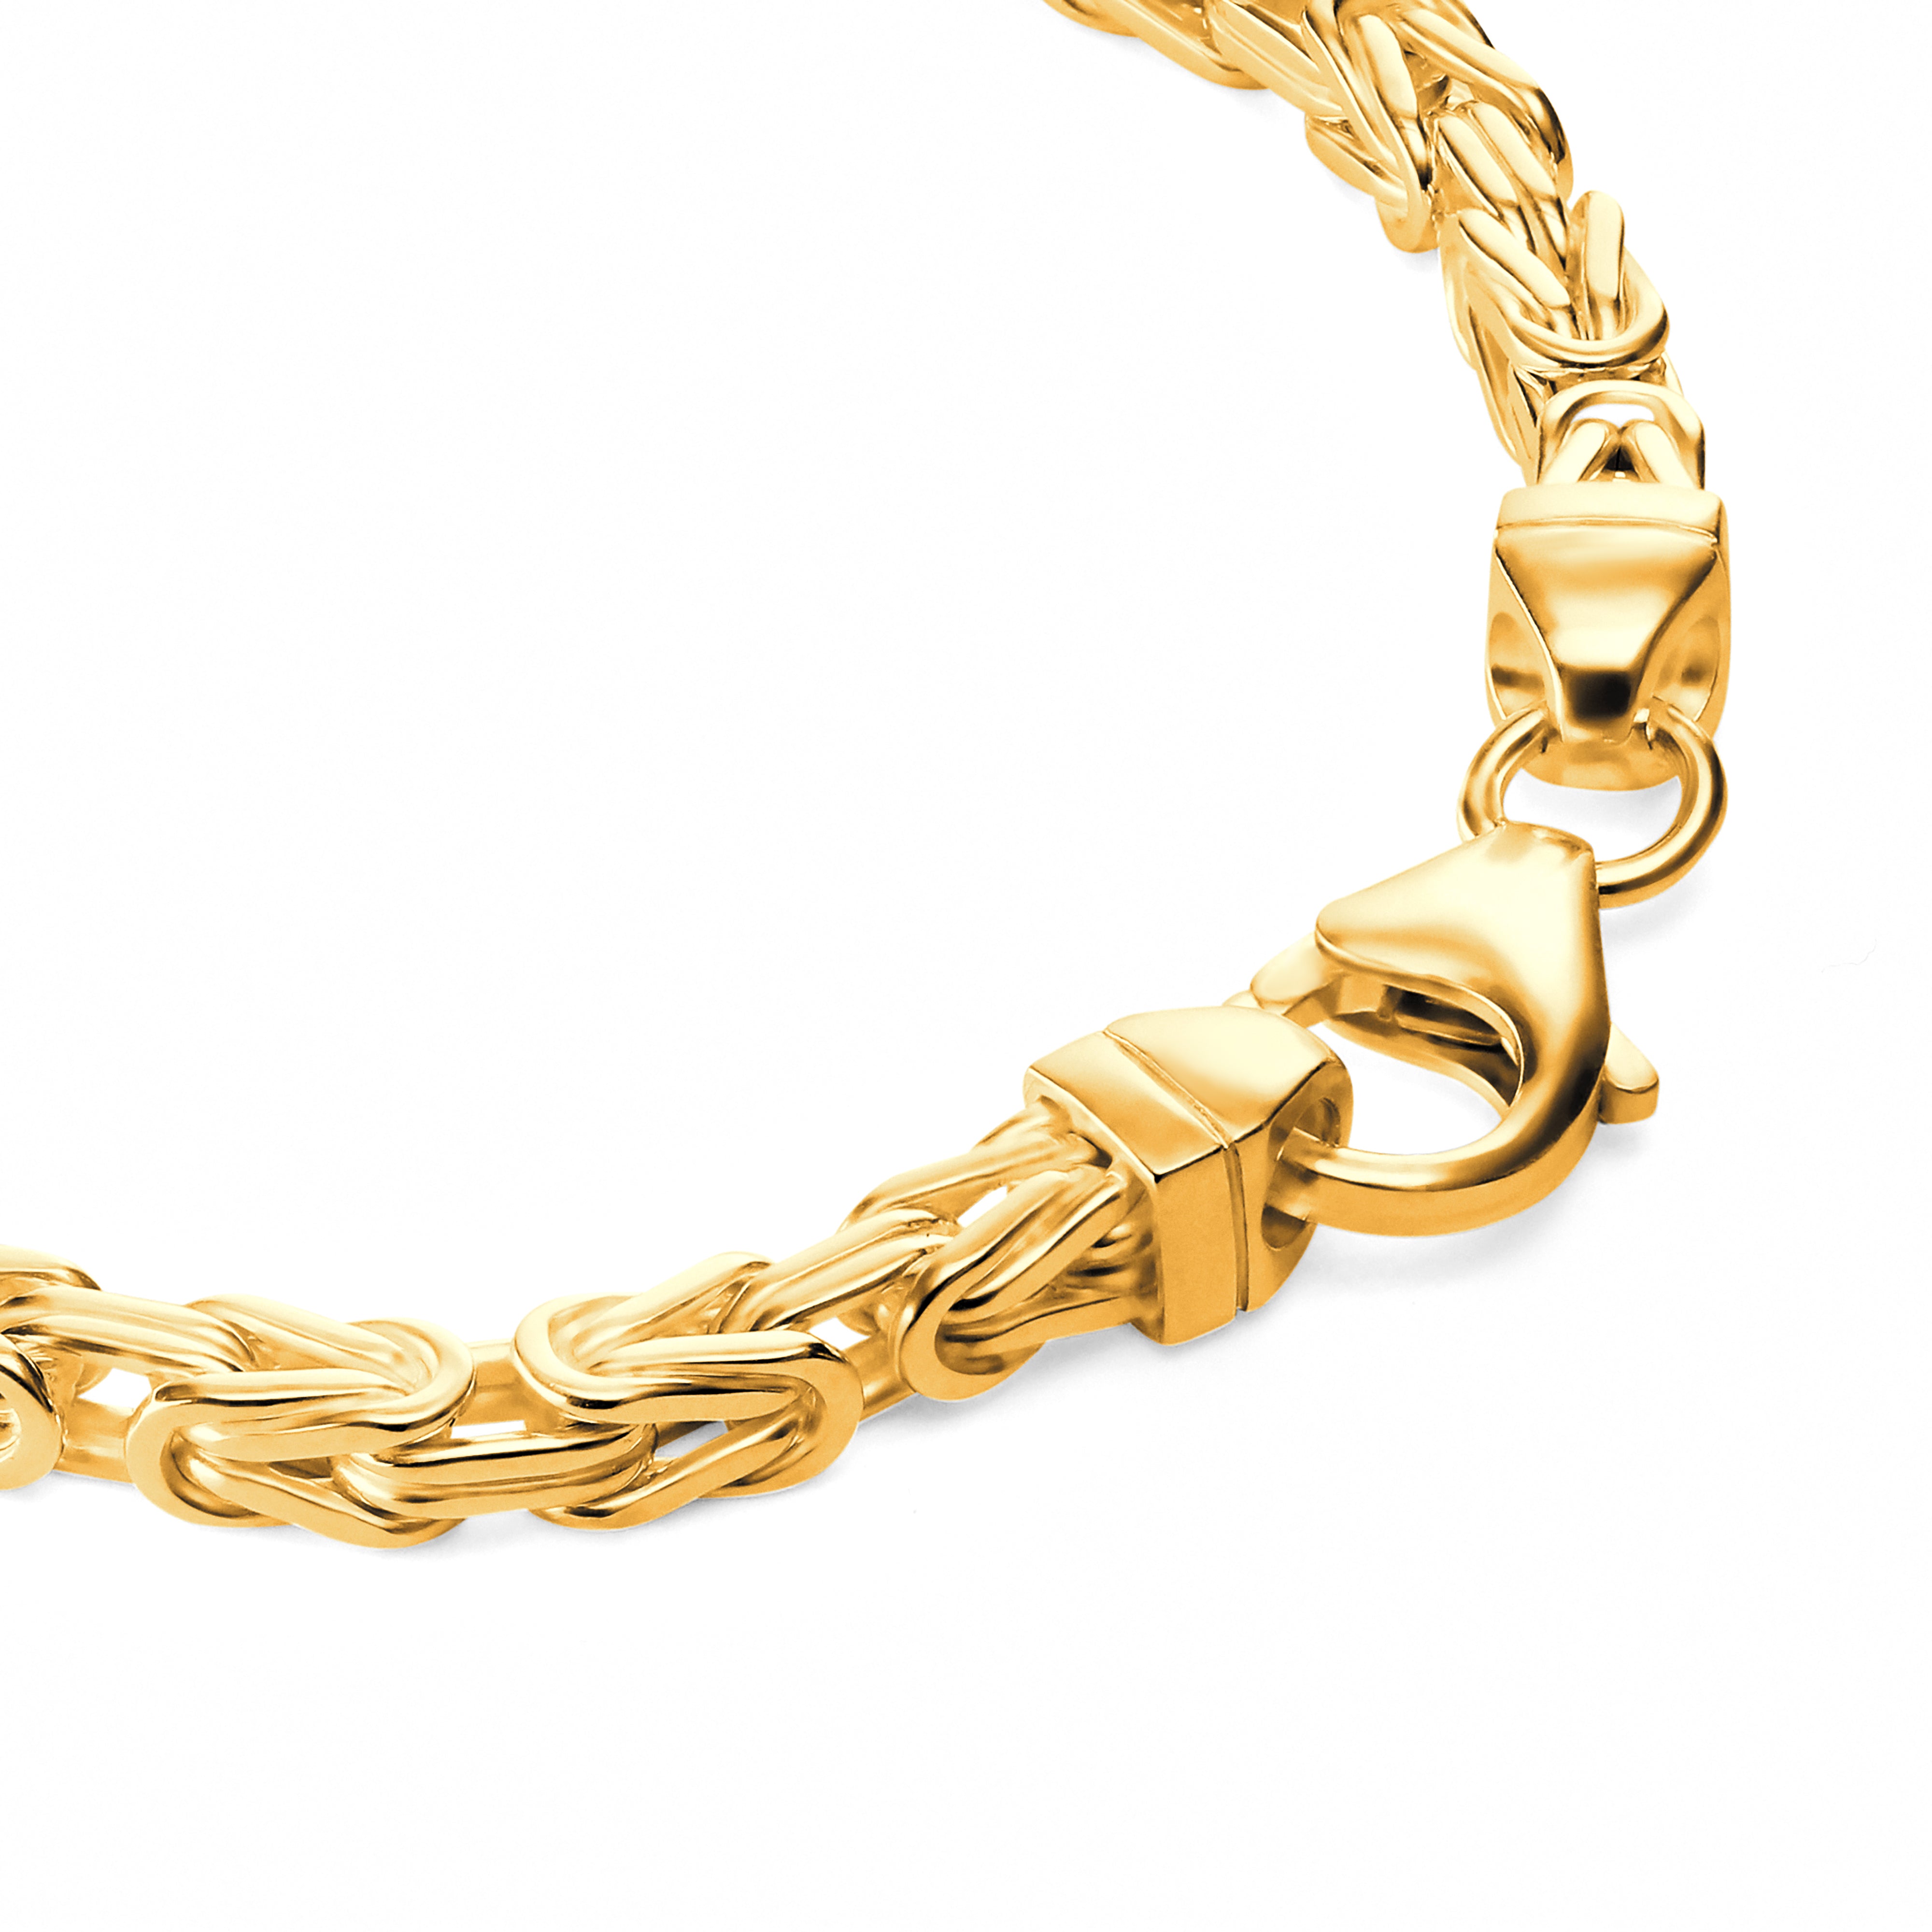 Byzantine bracelet 4mm wide - 585 gold